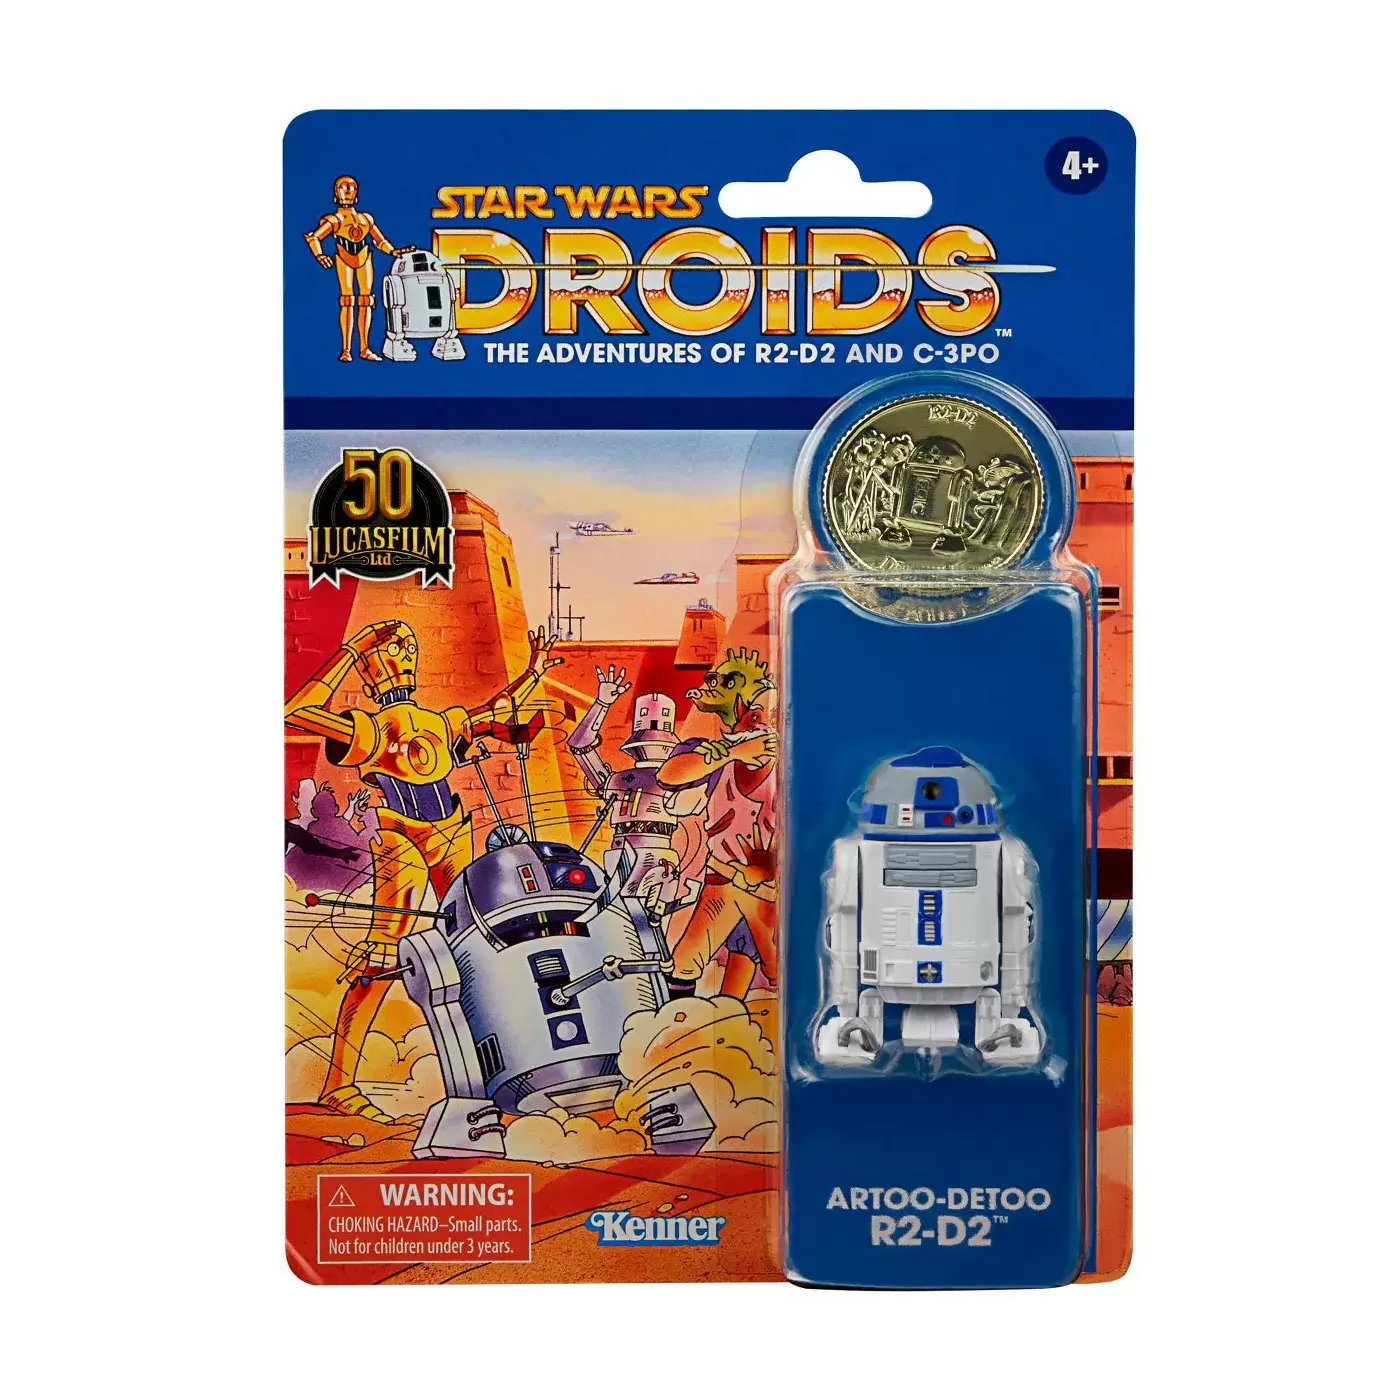 The Vintage Collection - Artoo-Detoo R2-D2 (Droids)